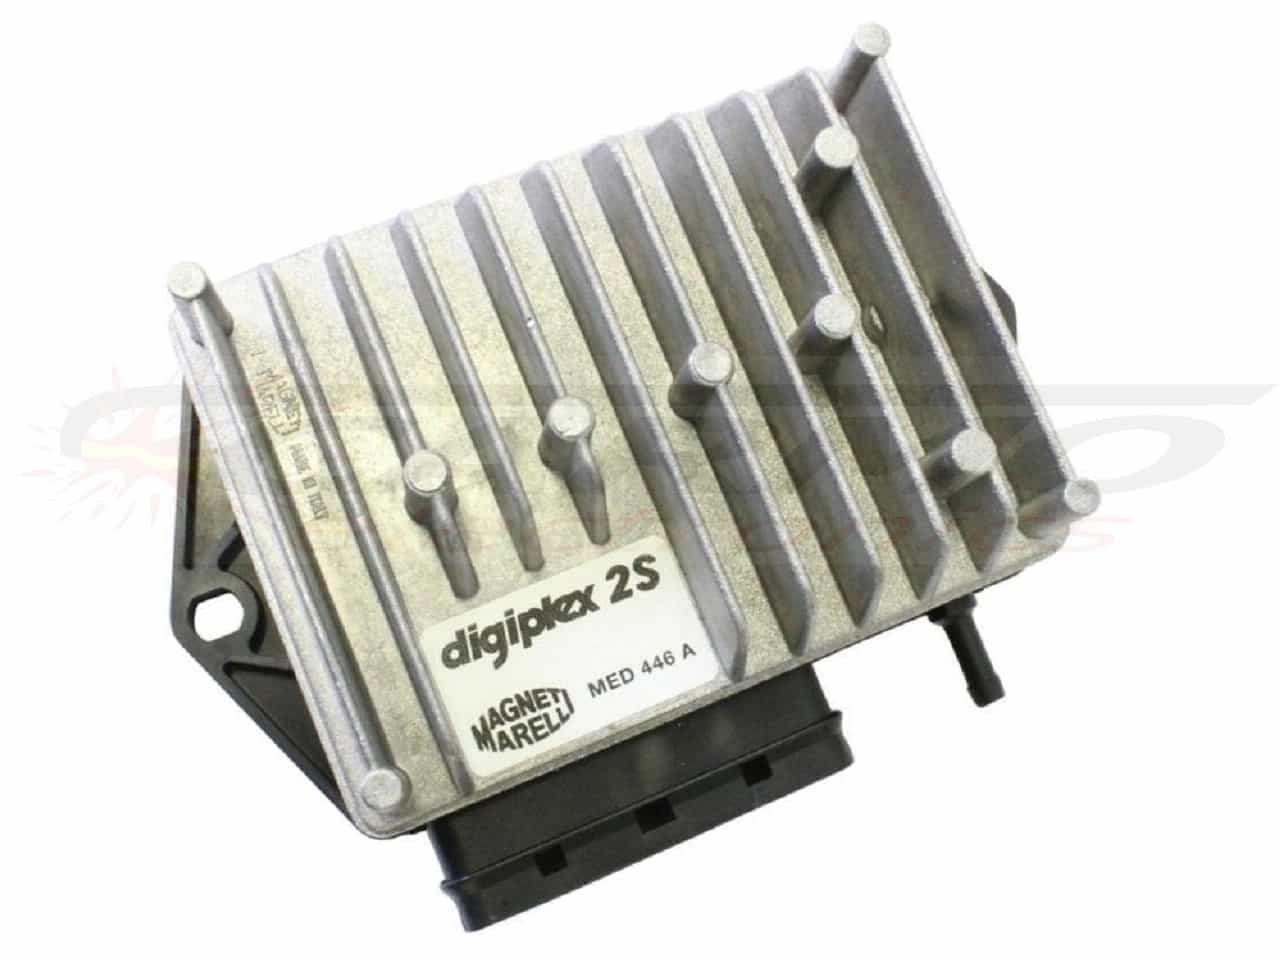 850-T5 Polizia igniter ignition module CDI TCI Box (Digiplex 2S / MED446A)